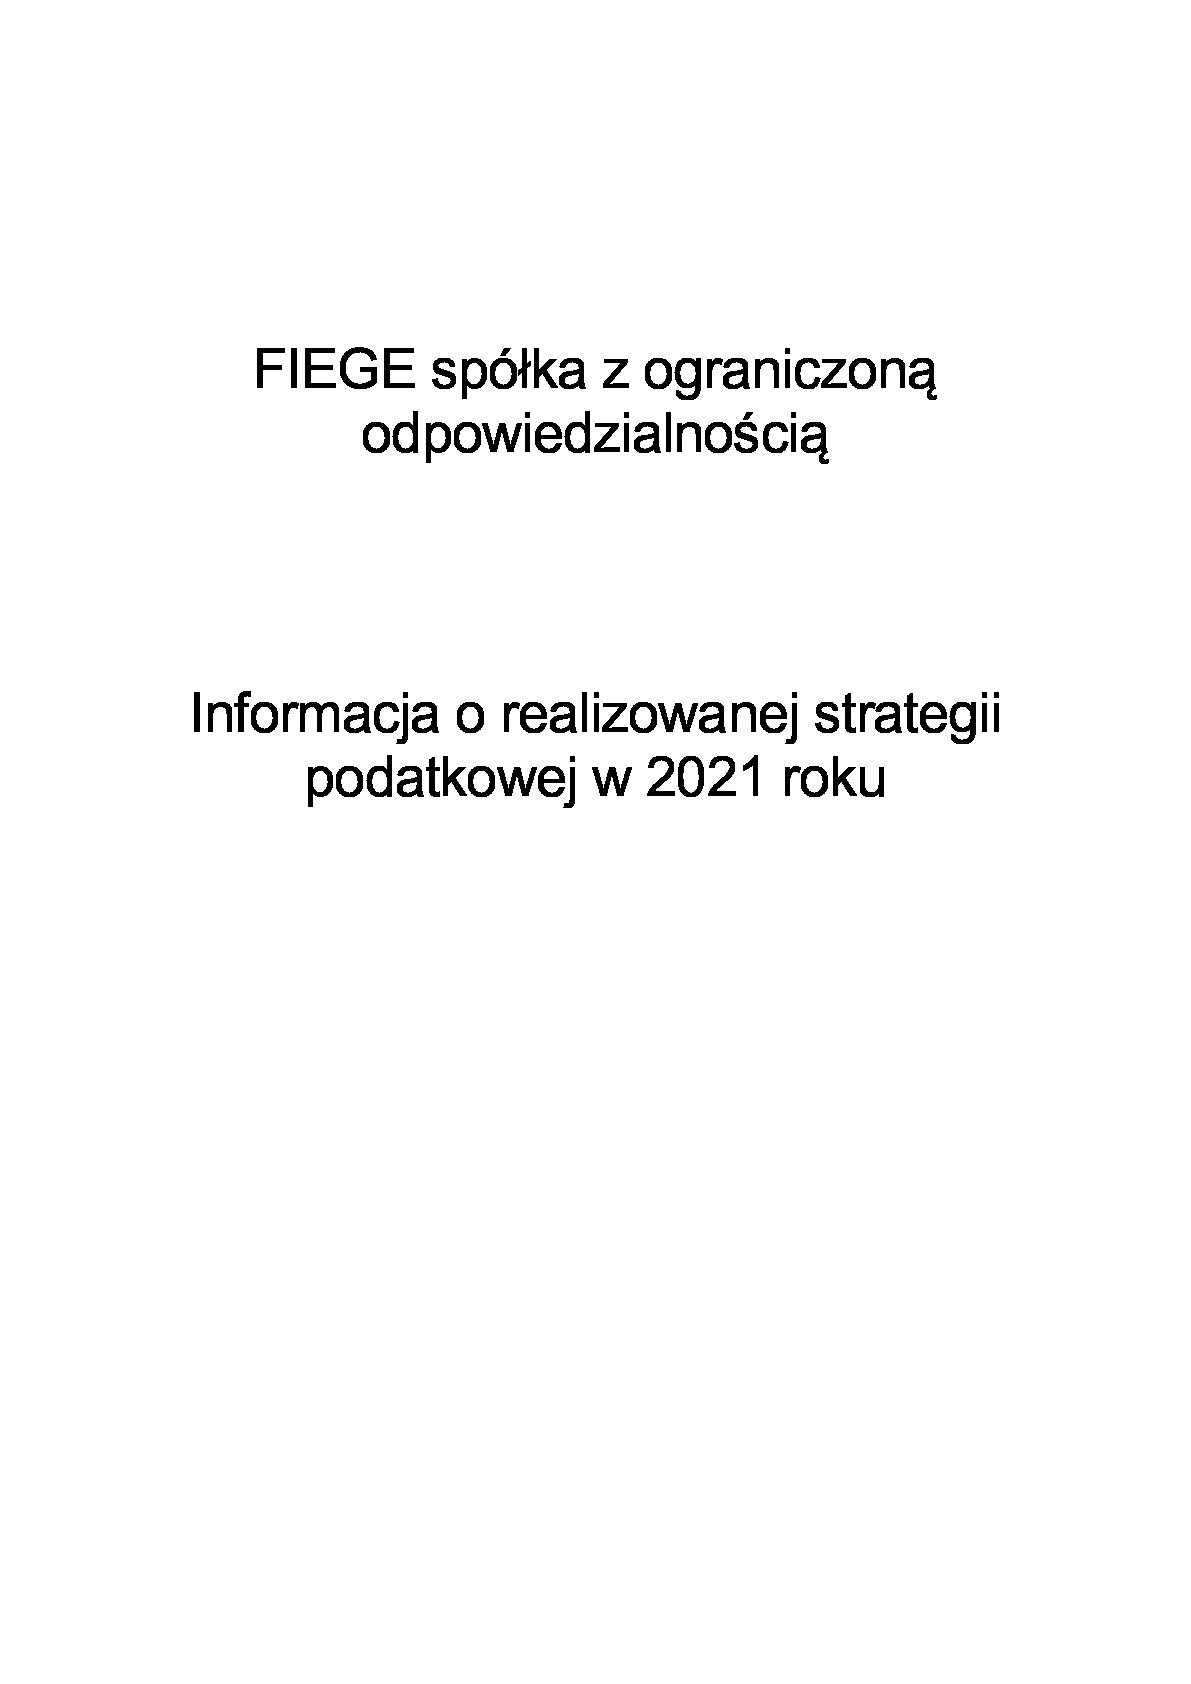 informacja-o-strategii_fiege-sp.-z-o.o.-2021.pdf